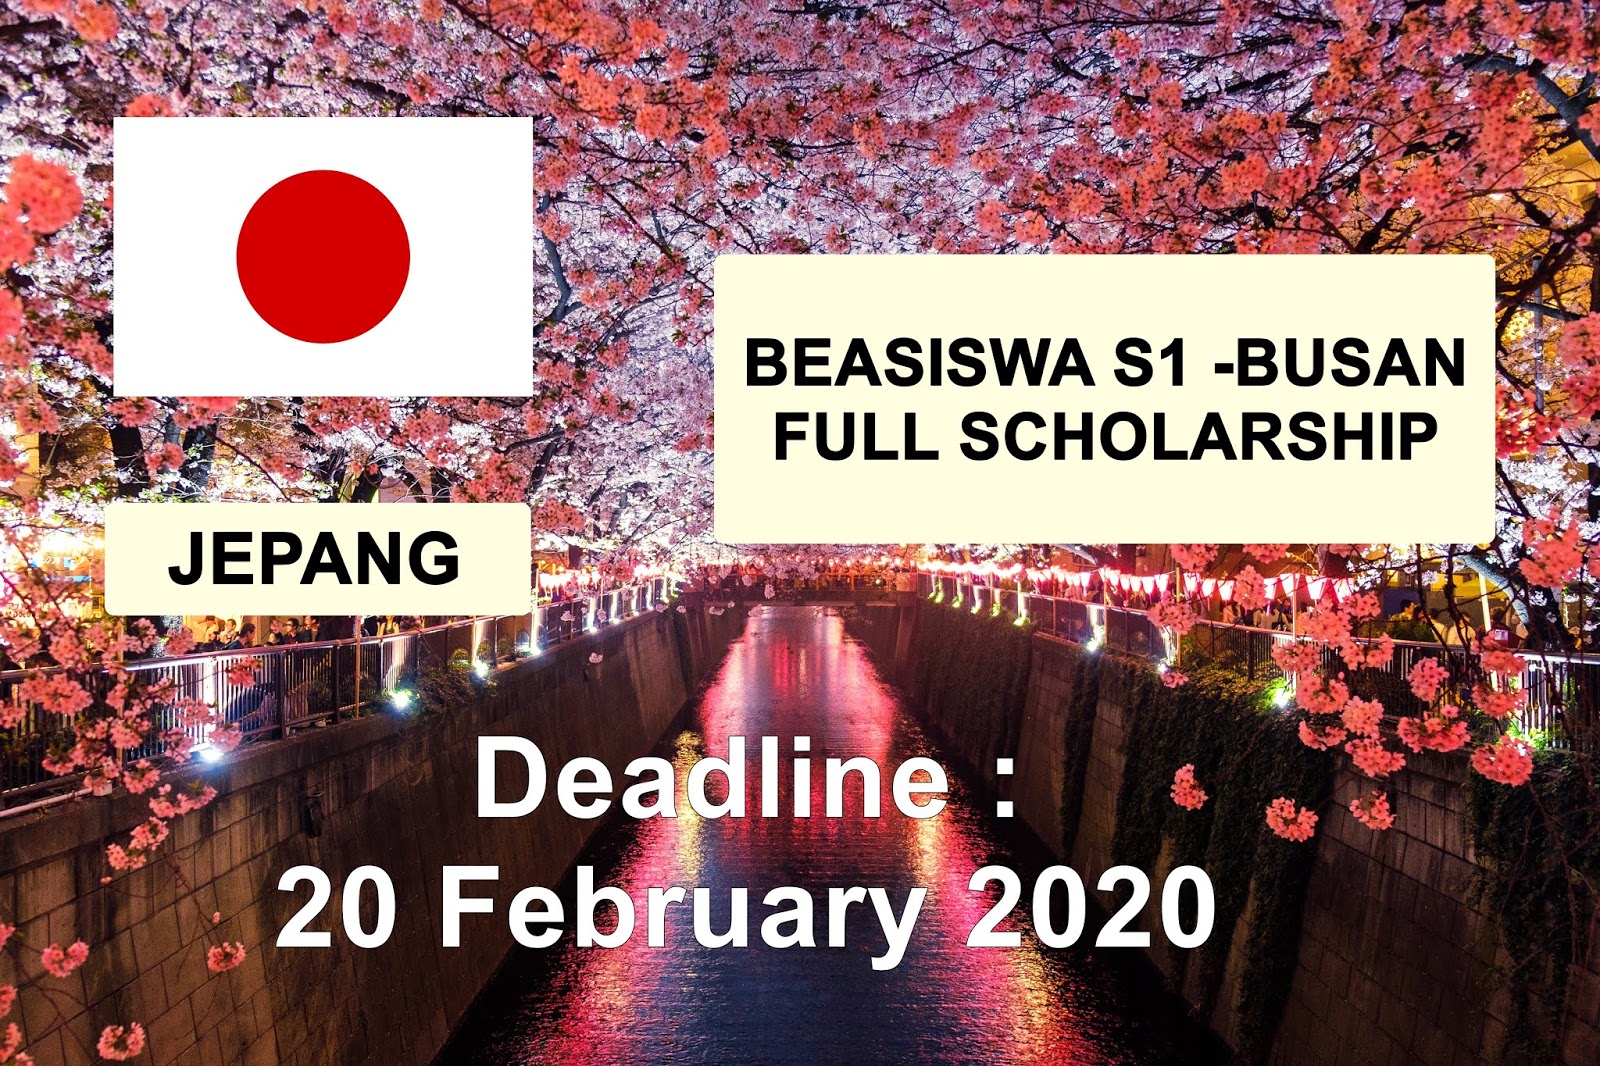 BEASISWA KULIAH GRATIS S1 JEPANG 2020 Mitsui – Bussan Scholarship - La